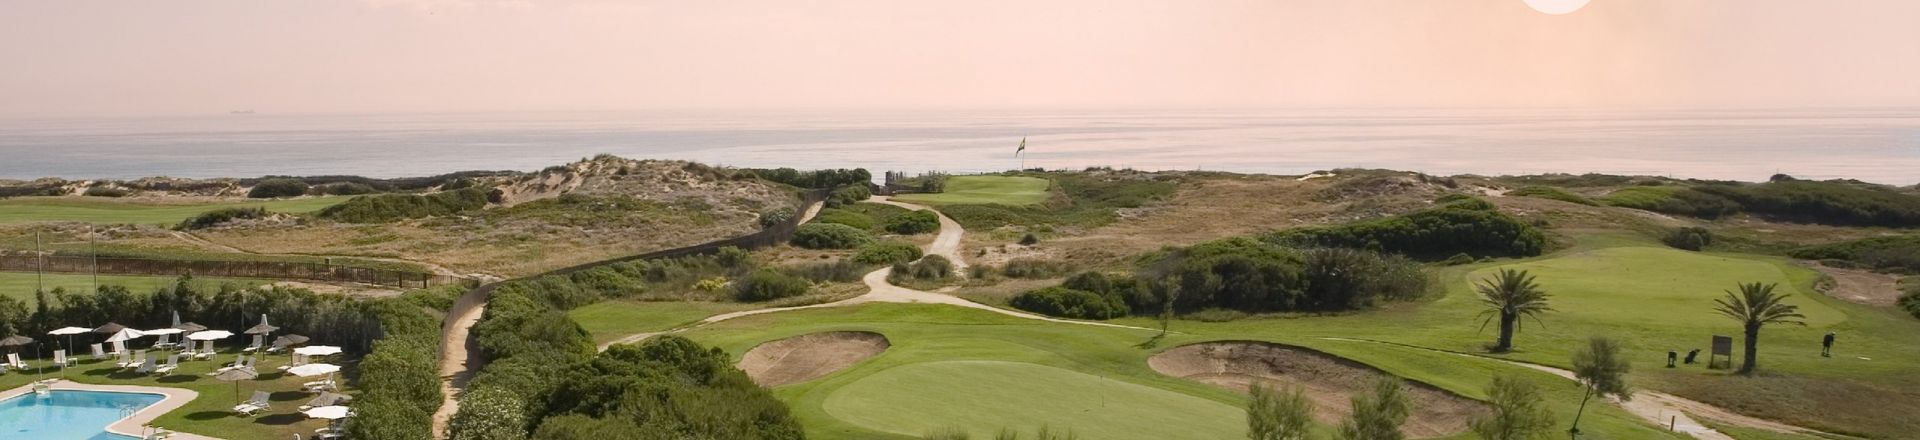 Parador de Malaga Golf Club